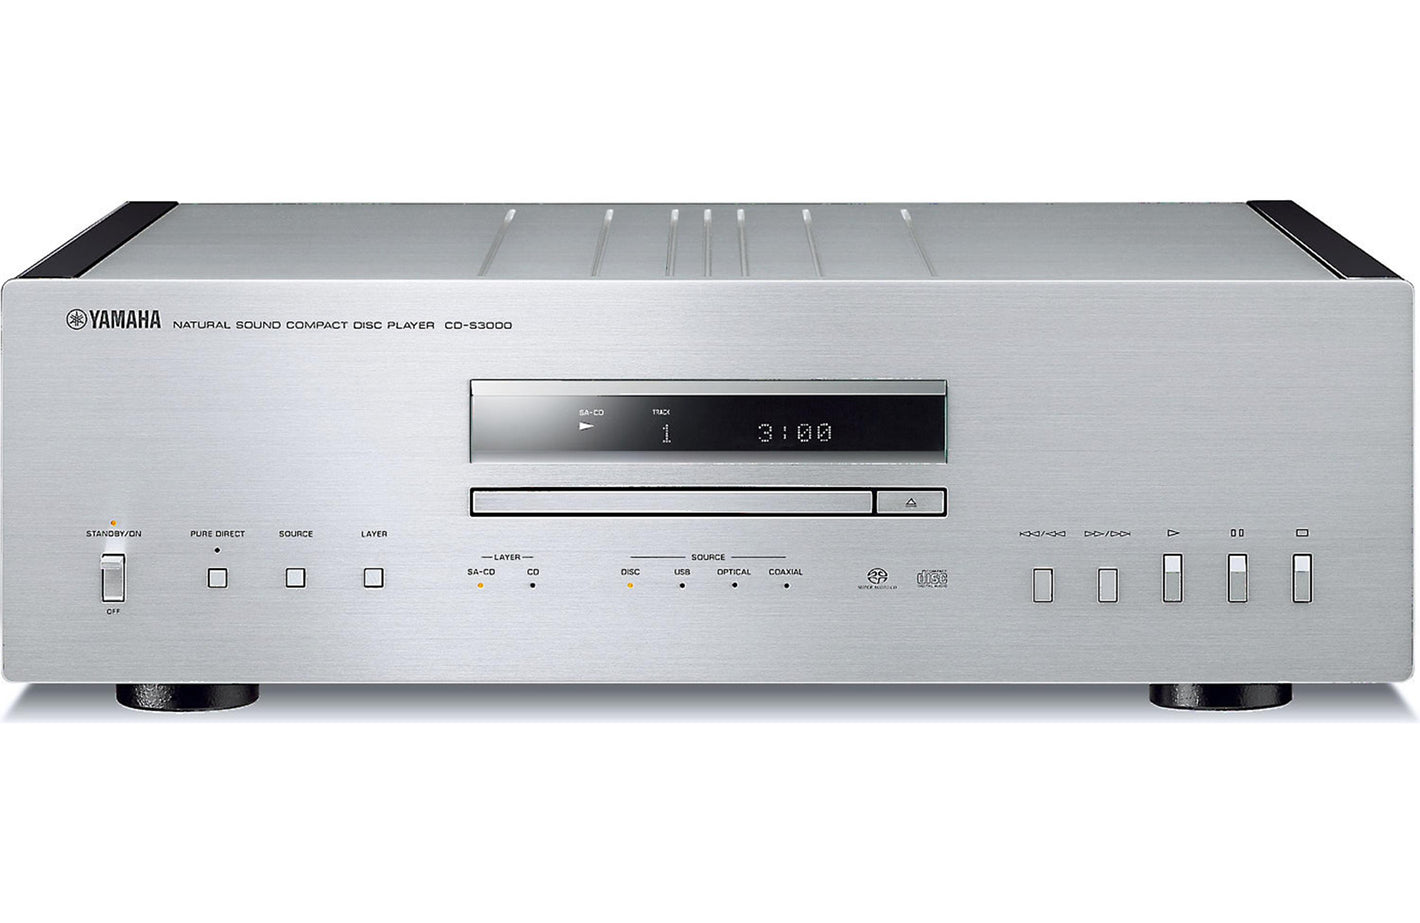 Yamaha CD-S3000 SACD/CD player with DAC